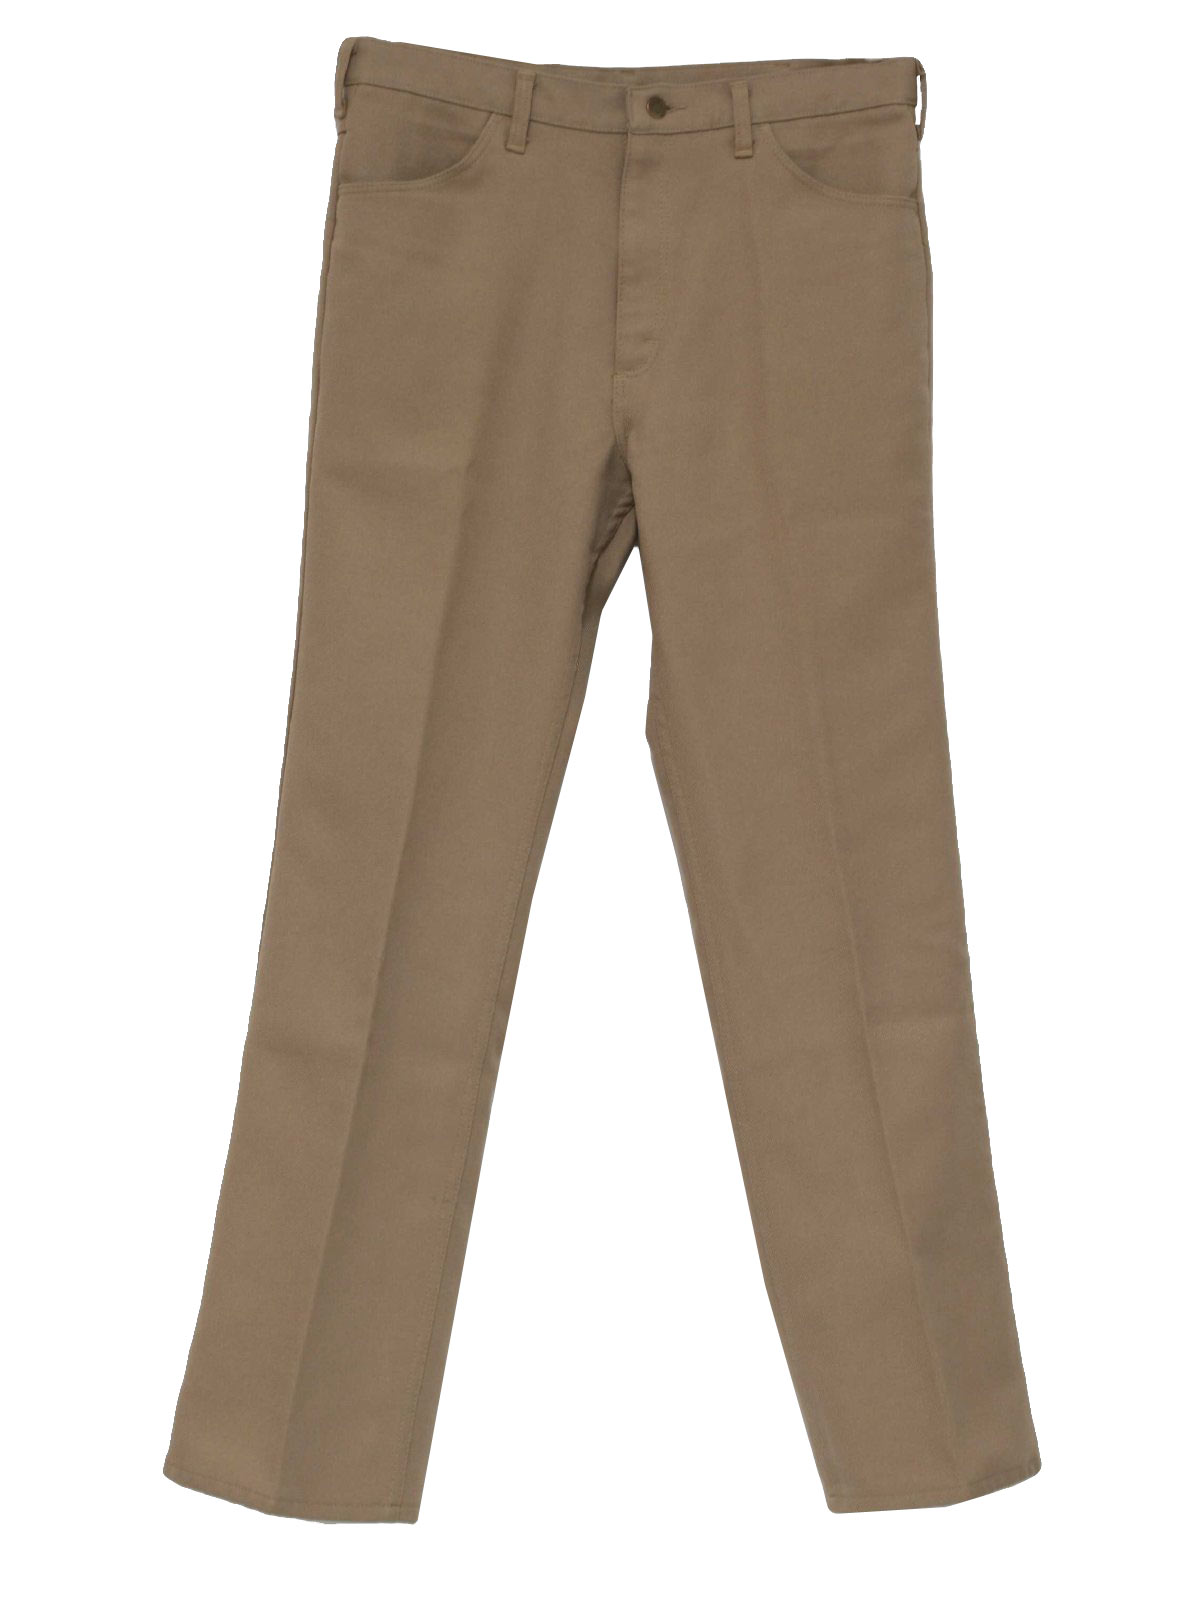 Vintage Wrangler 1970s Pants: 70s -Wrangler- Mens tan straight leg ...